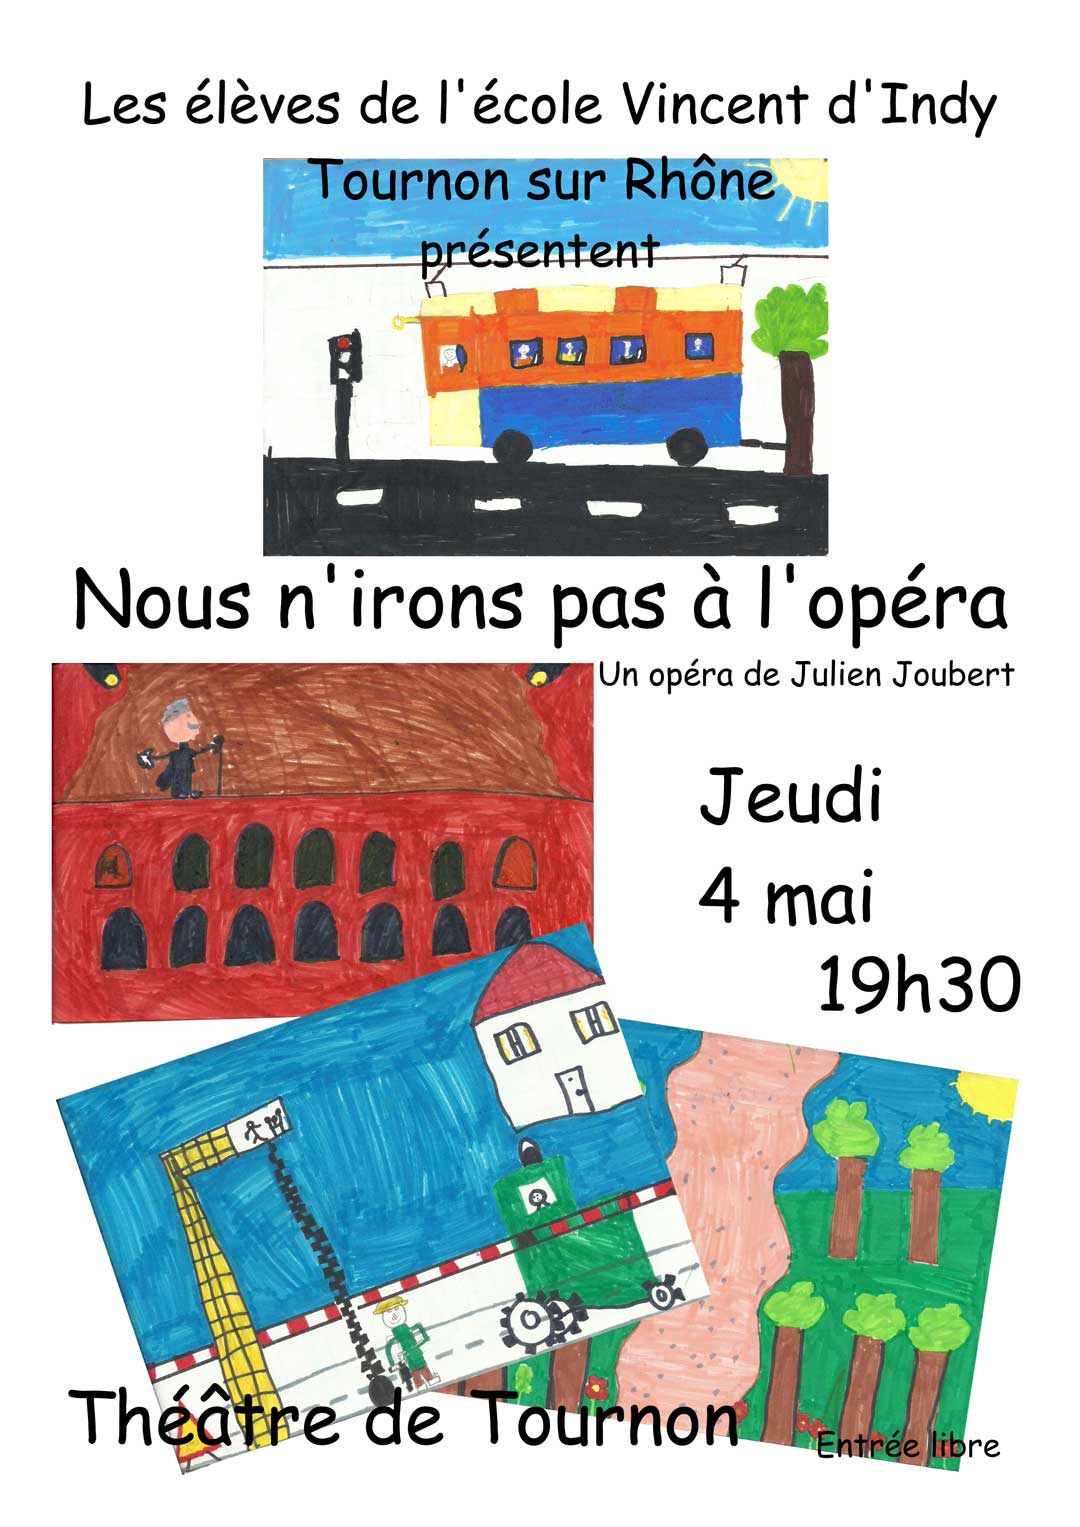 Les élèves de l'école Vincent d'Indy présentent: NOUS N'IRONS PAS A L'OPERA. Un opéra de julien Joubert. Jeudi 4 mai 2017 au théatre de Tournon. Entrée libre.